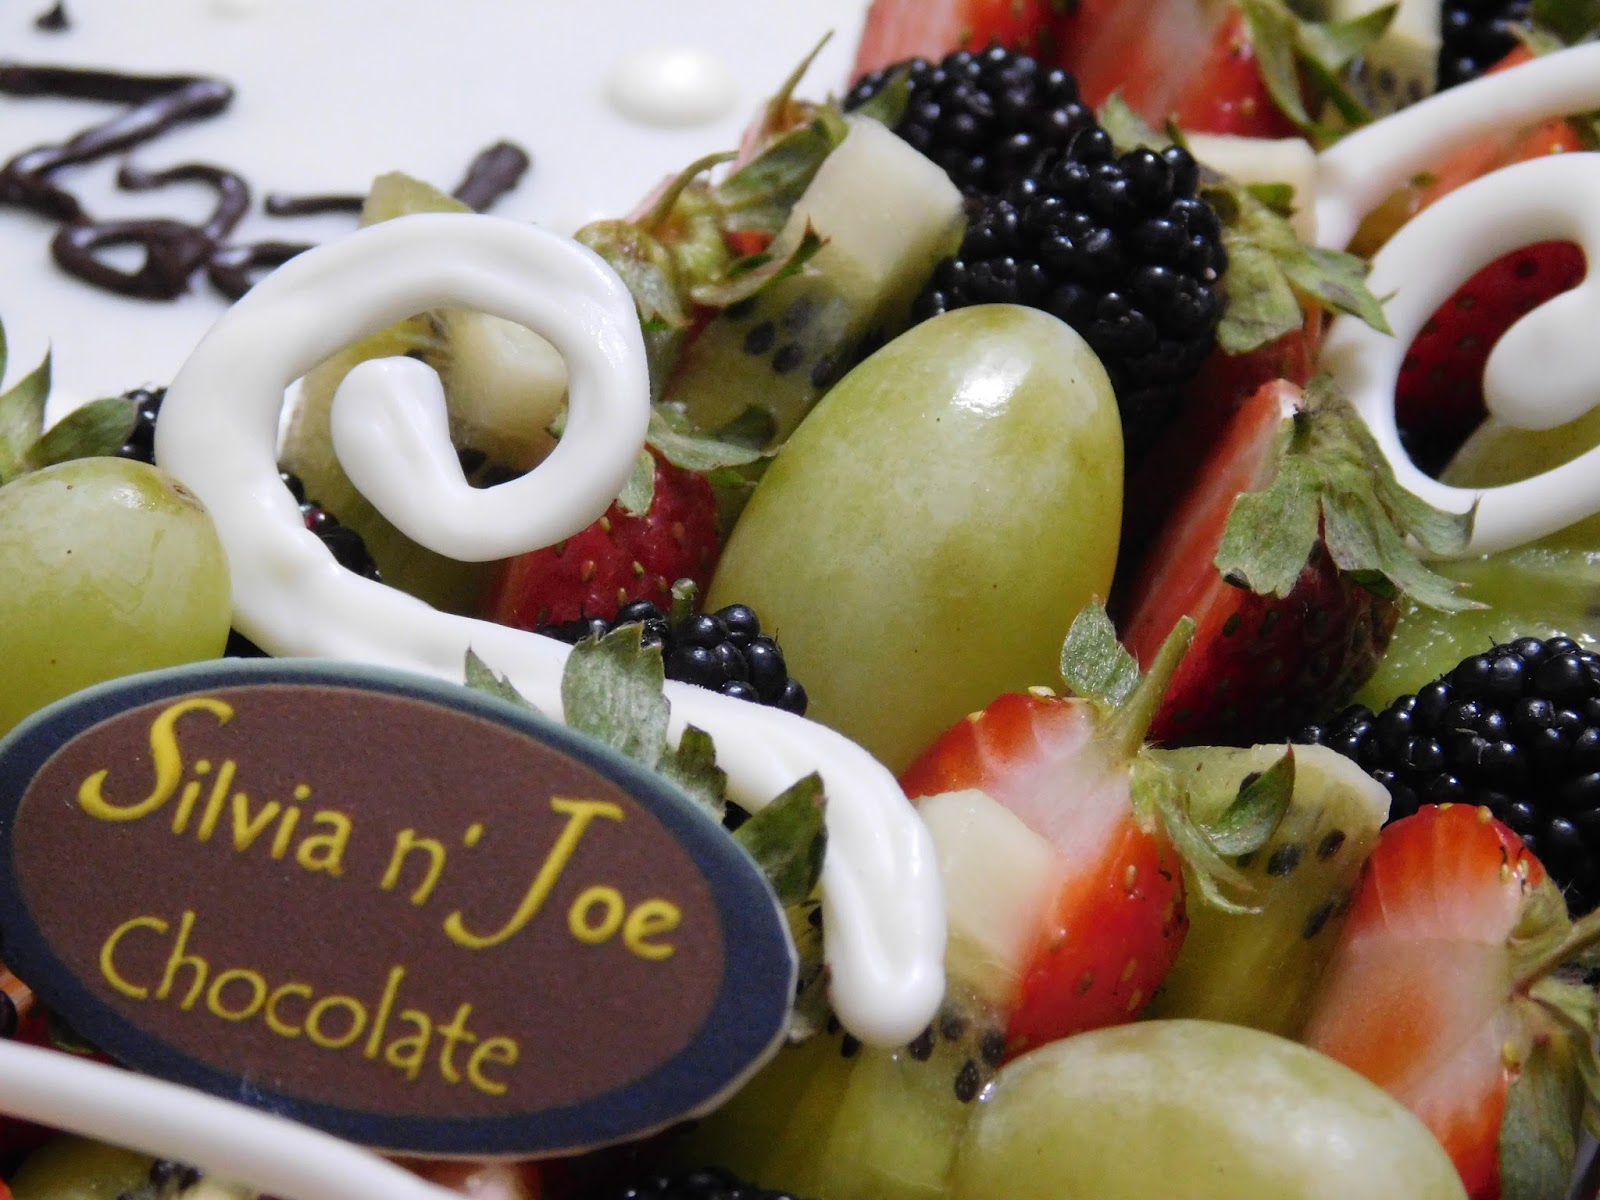 Kisah Sukses Bisnis Coklat Silvia n' Joe Chocolate, Terinspirasi Hadiah dari Fans 8